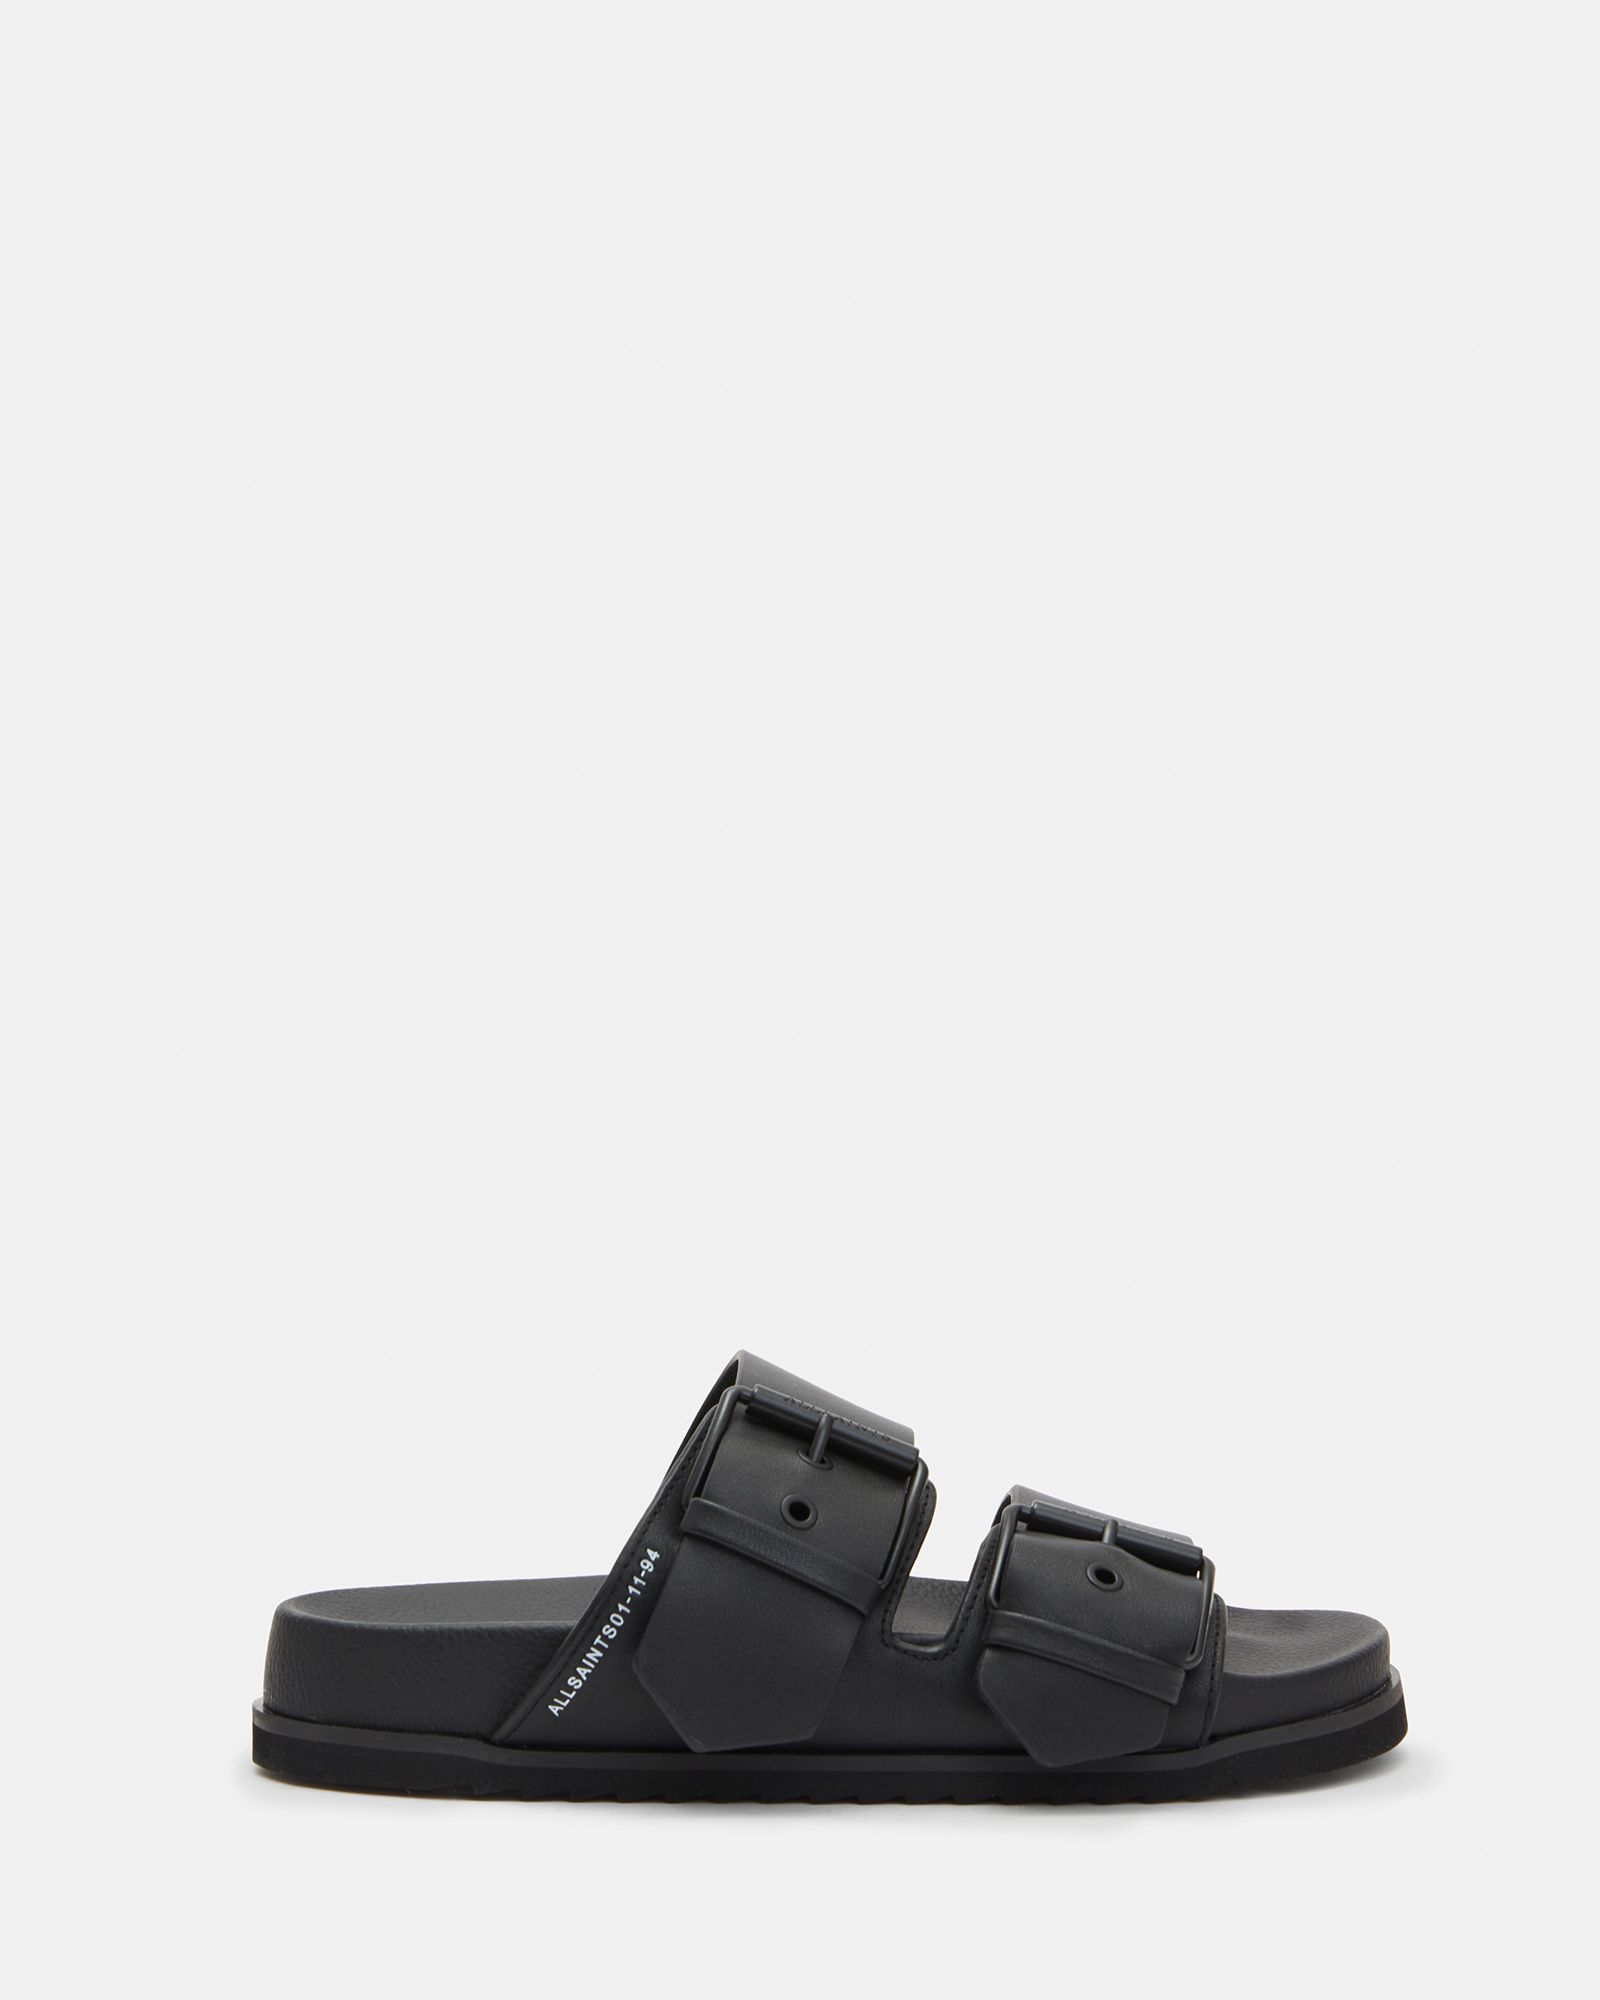 Sian Leather Sandals Black | ALLSAINTS | AllSaints UK